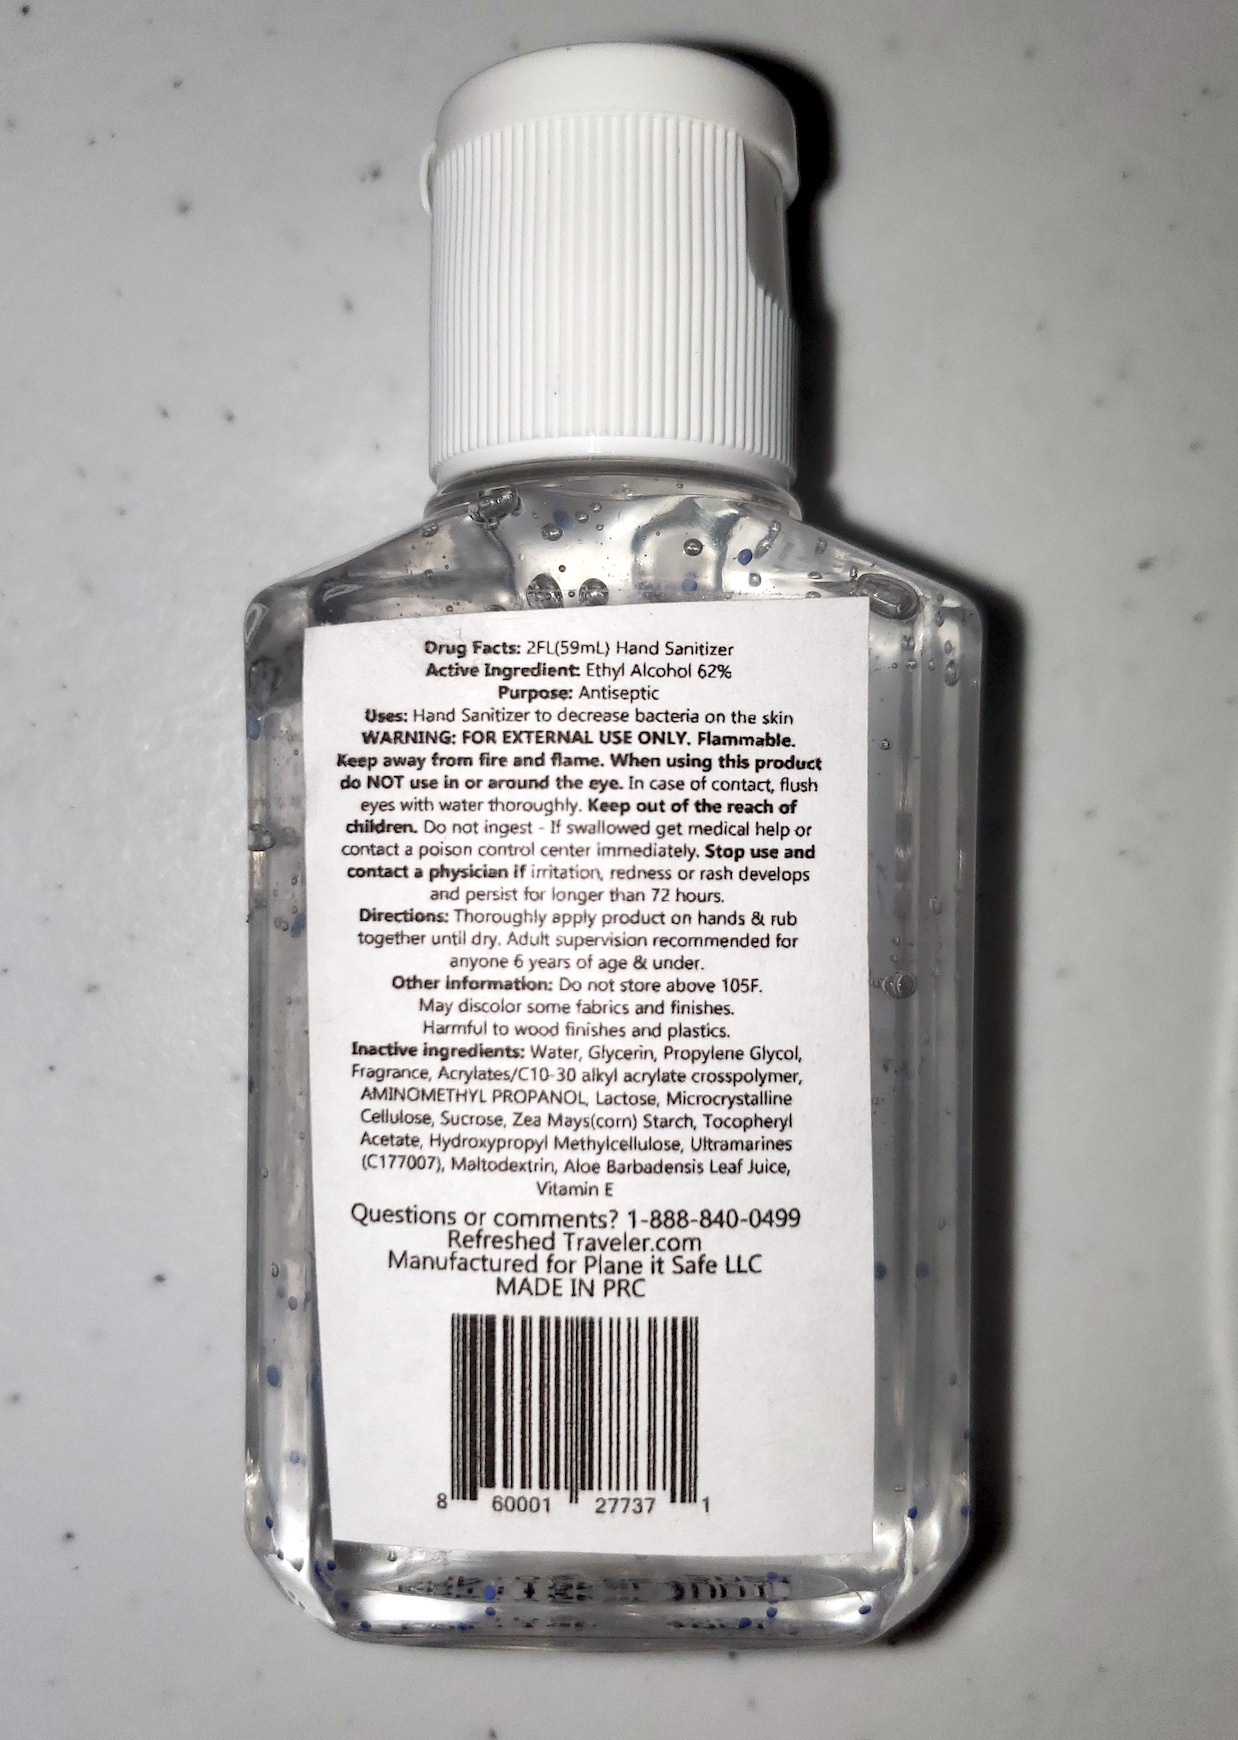 Refreshed Traveler Hand Sanitizer back label